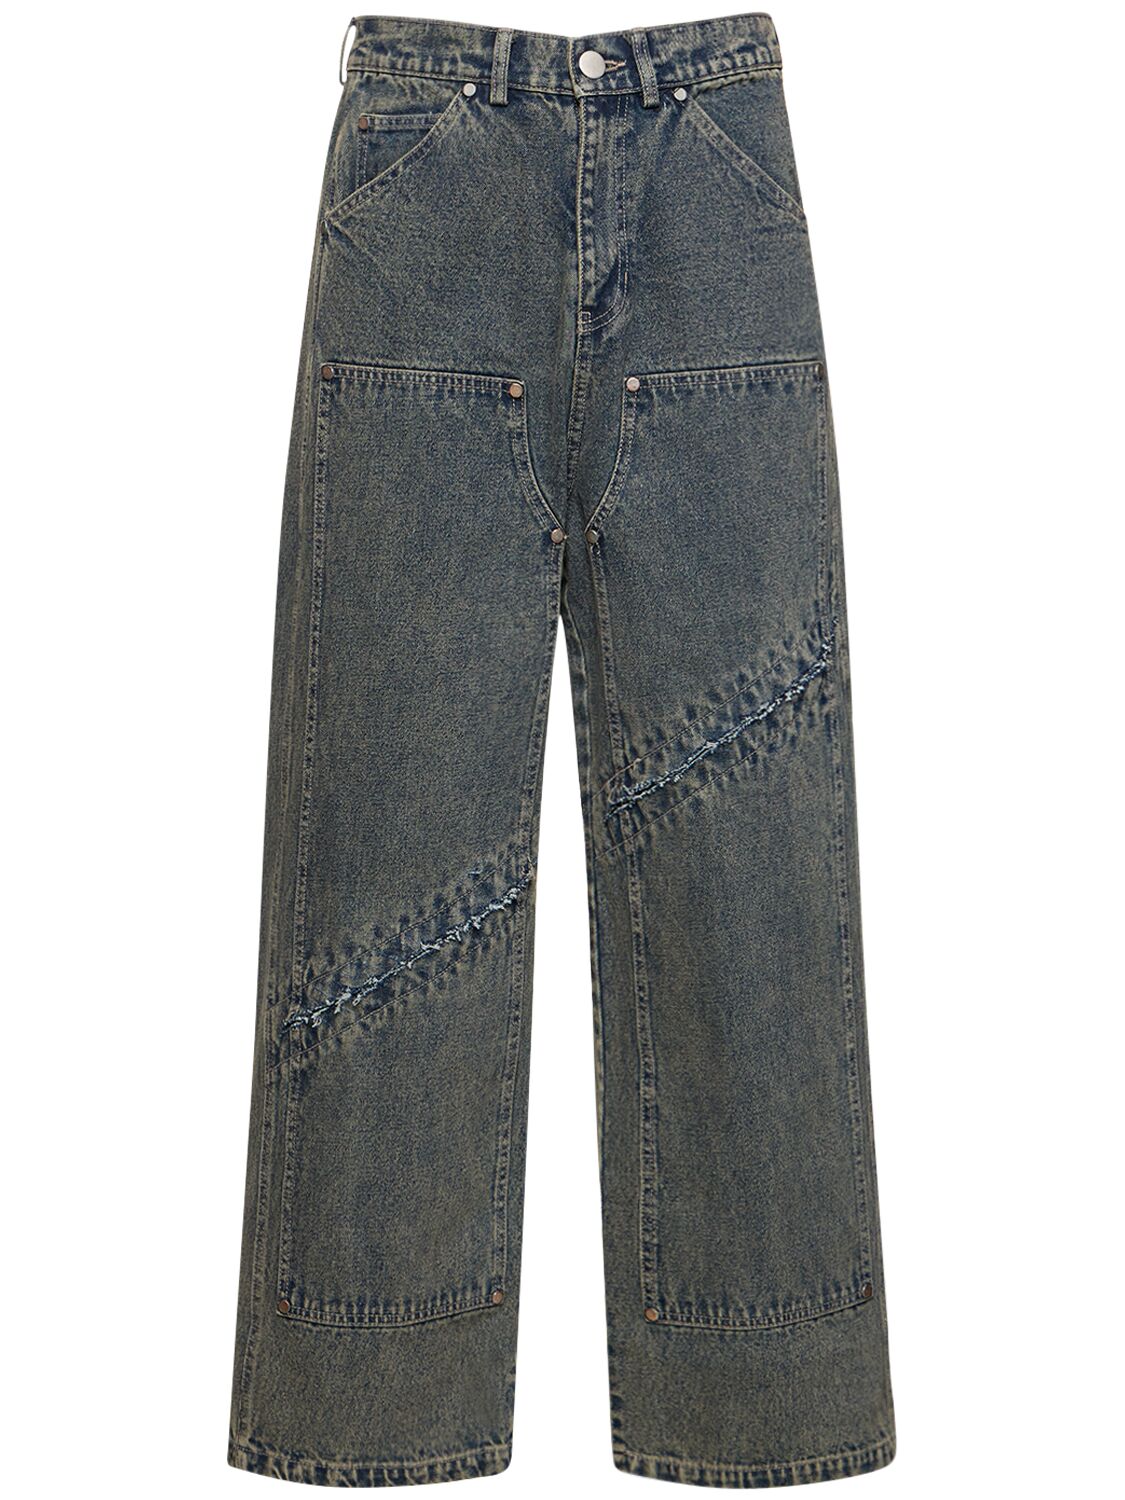 S.o.c Vintage Cotton Denim Jeans